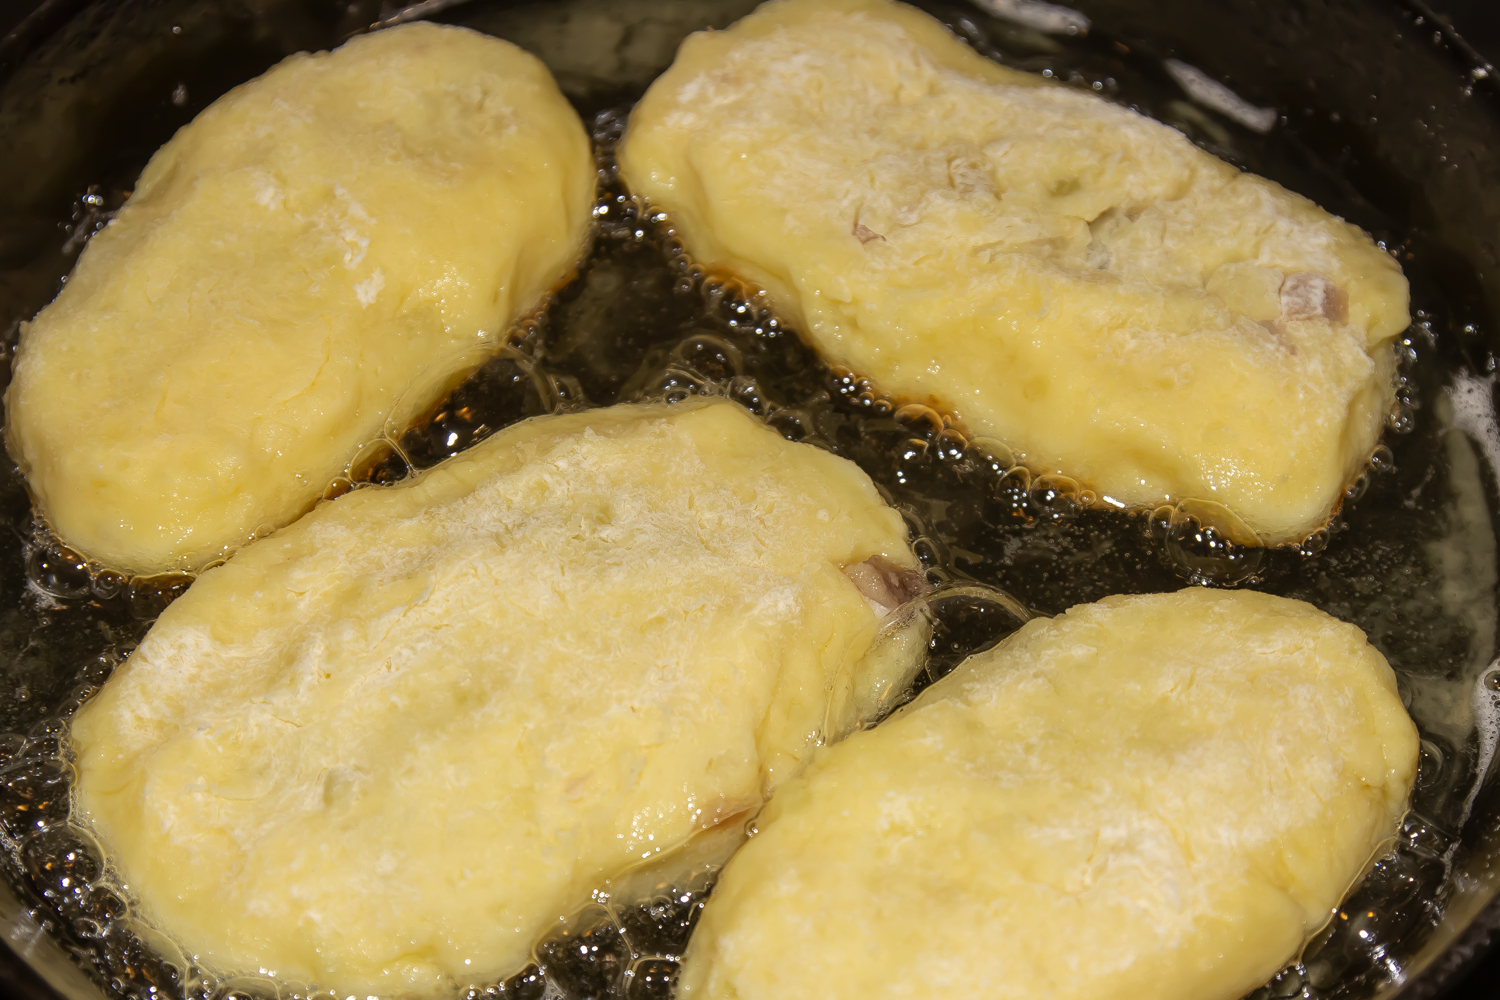 котлеты выложенные в масло по рецепту  Картофельные котлеты с куриным мясом 